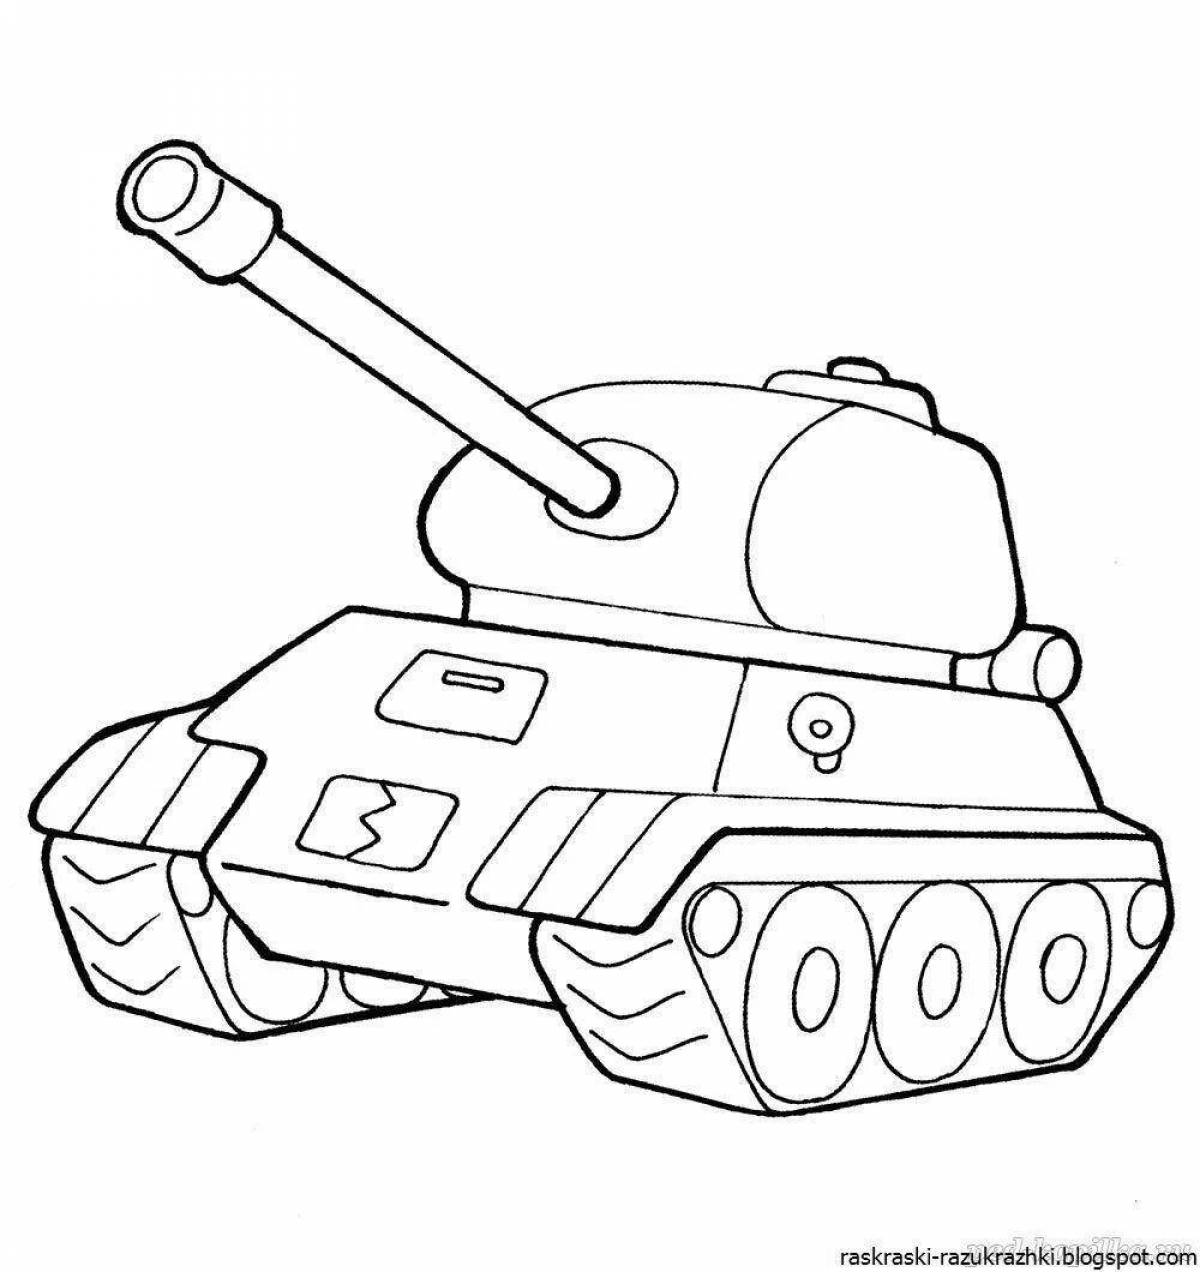 Цветная страница раскраски военной техники для детей 3-4 лет